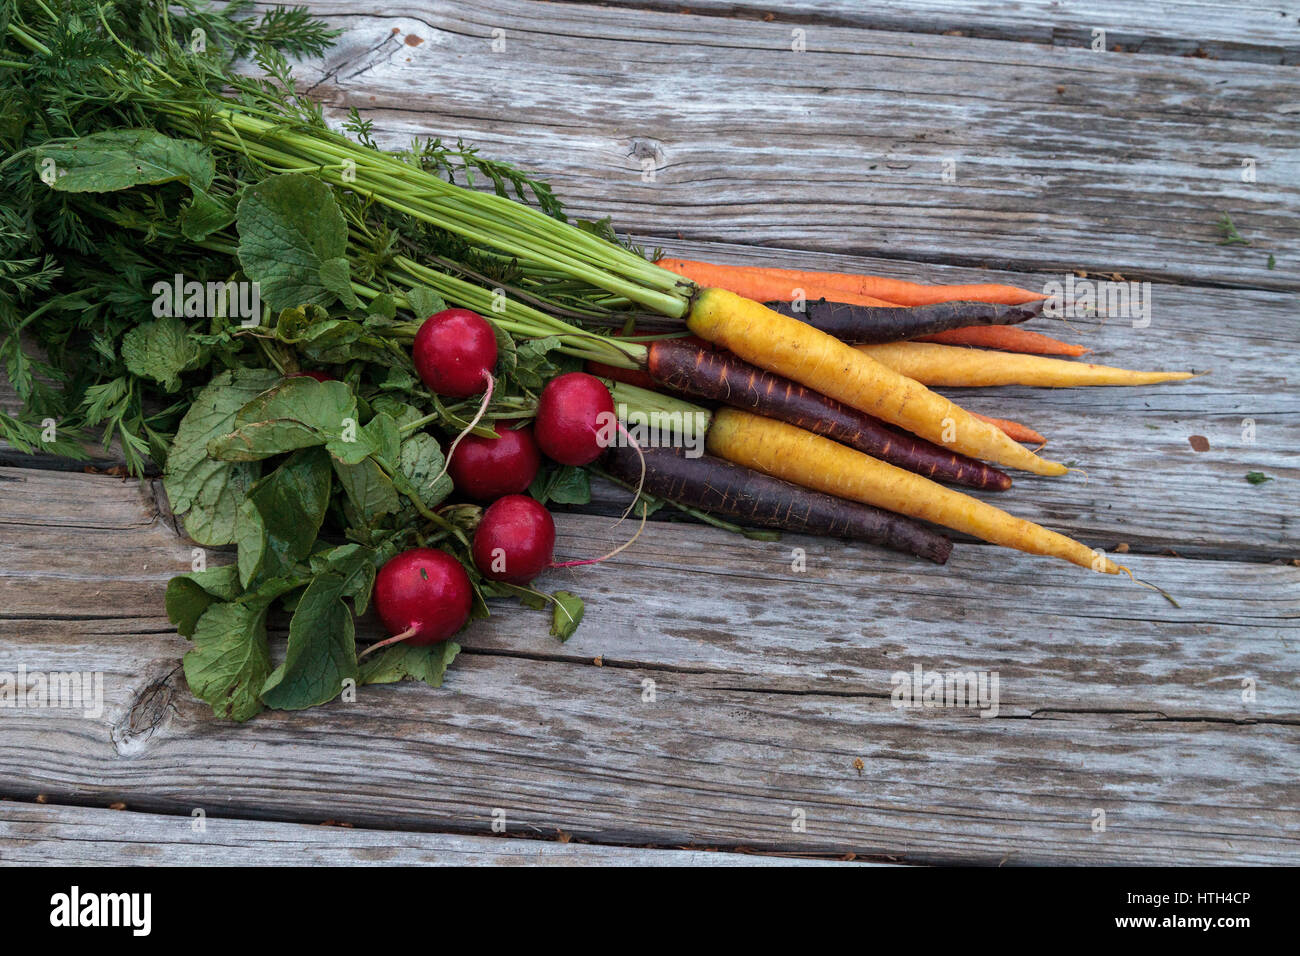 Bio rote Radieschen und Karotten in den Farben gelb, lila und Orange auf einem Bauernhof aufgewachsen und auf einem rustikalen Holz Picknick-Tisch angezeigt. Stockfoto